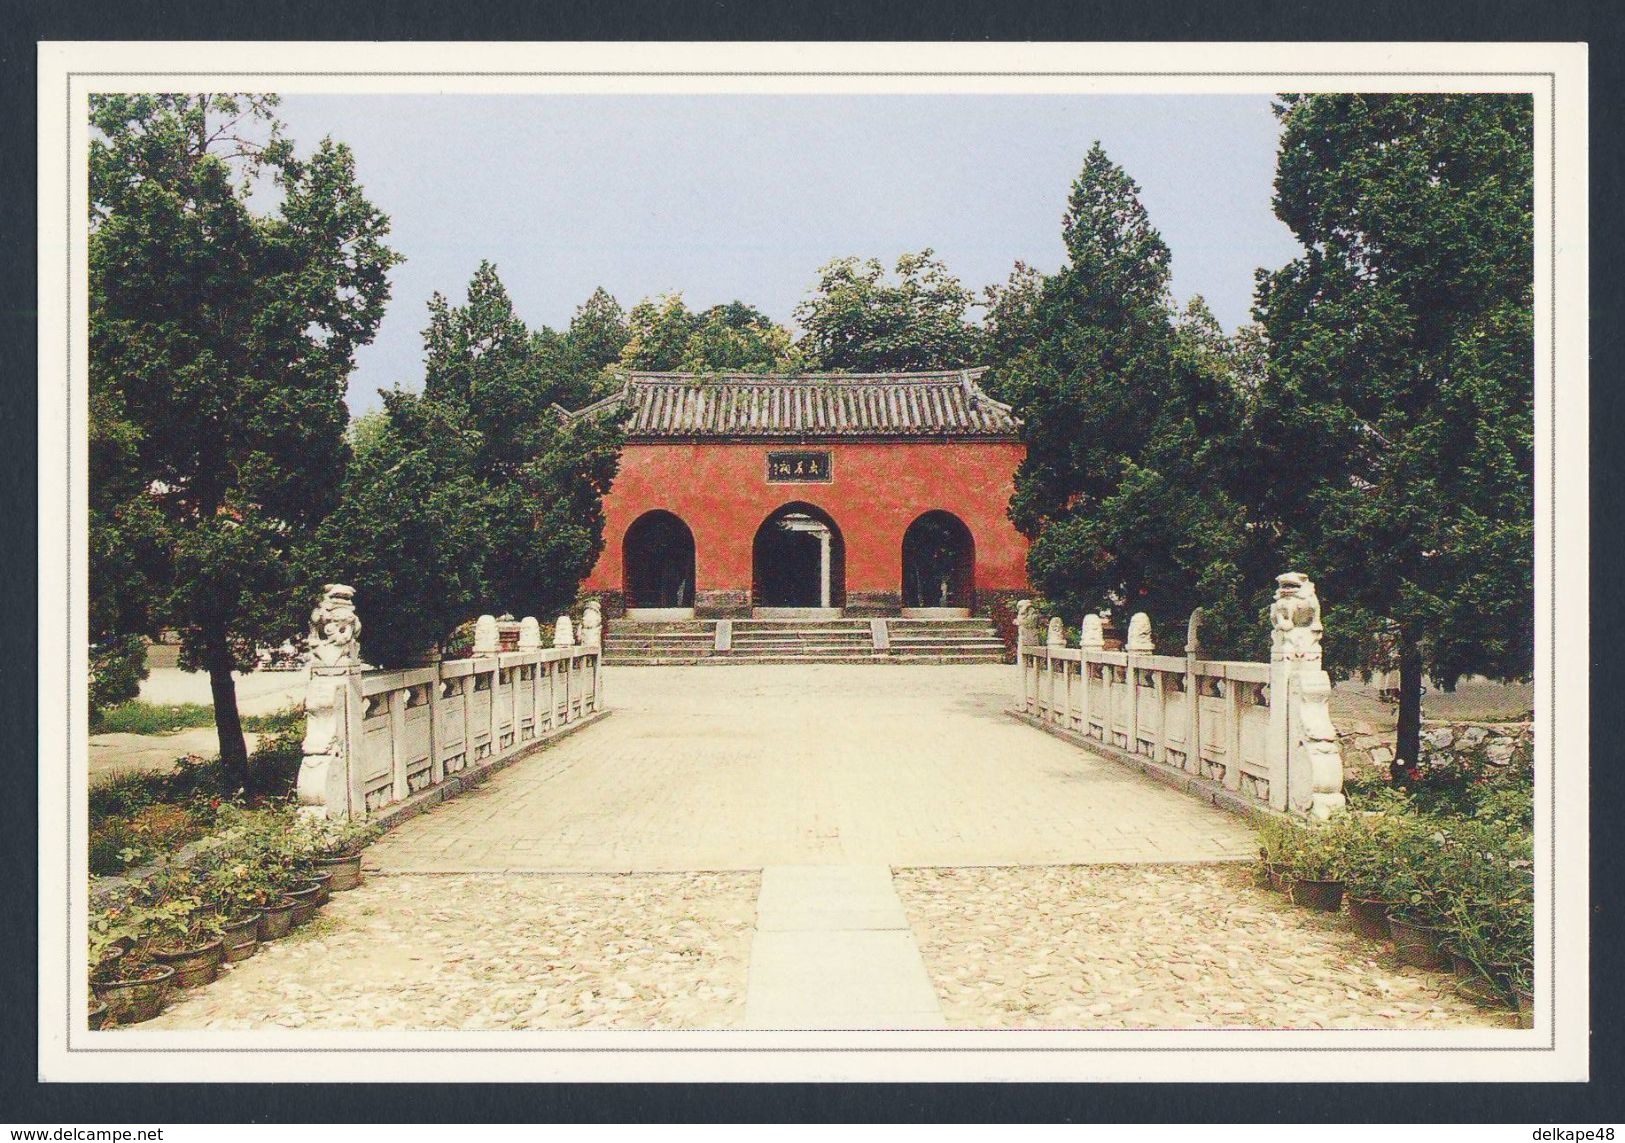 China 1999 Postcard / Postkarte - Wuhou Memorial Temple At Nanyang / Gedächtnistempel - China